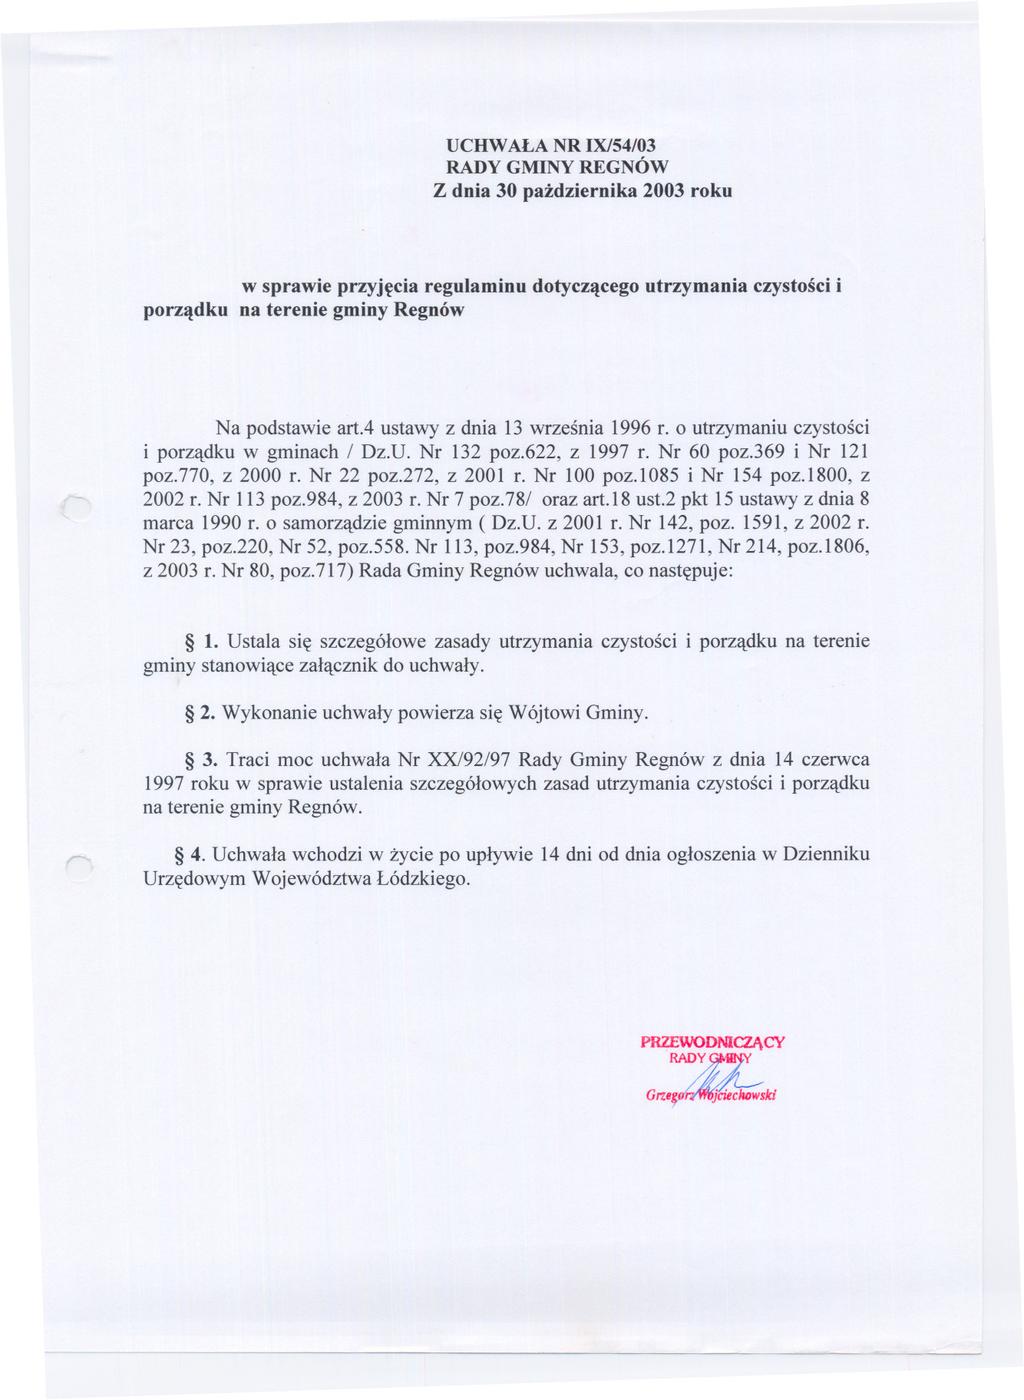 UCHWALA NR IX/54/03 RADY GMINY REGNÓW Z dnia 30 pazdziernika 2003 roku porzadku w sprawie przyjecia regulaminu dotyczacego utrzymania czystosci i na terenie gminy Regnów Na podstawie art.